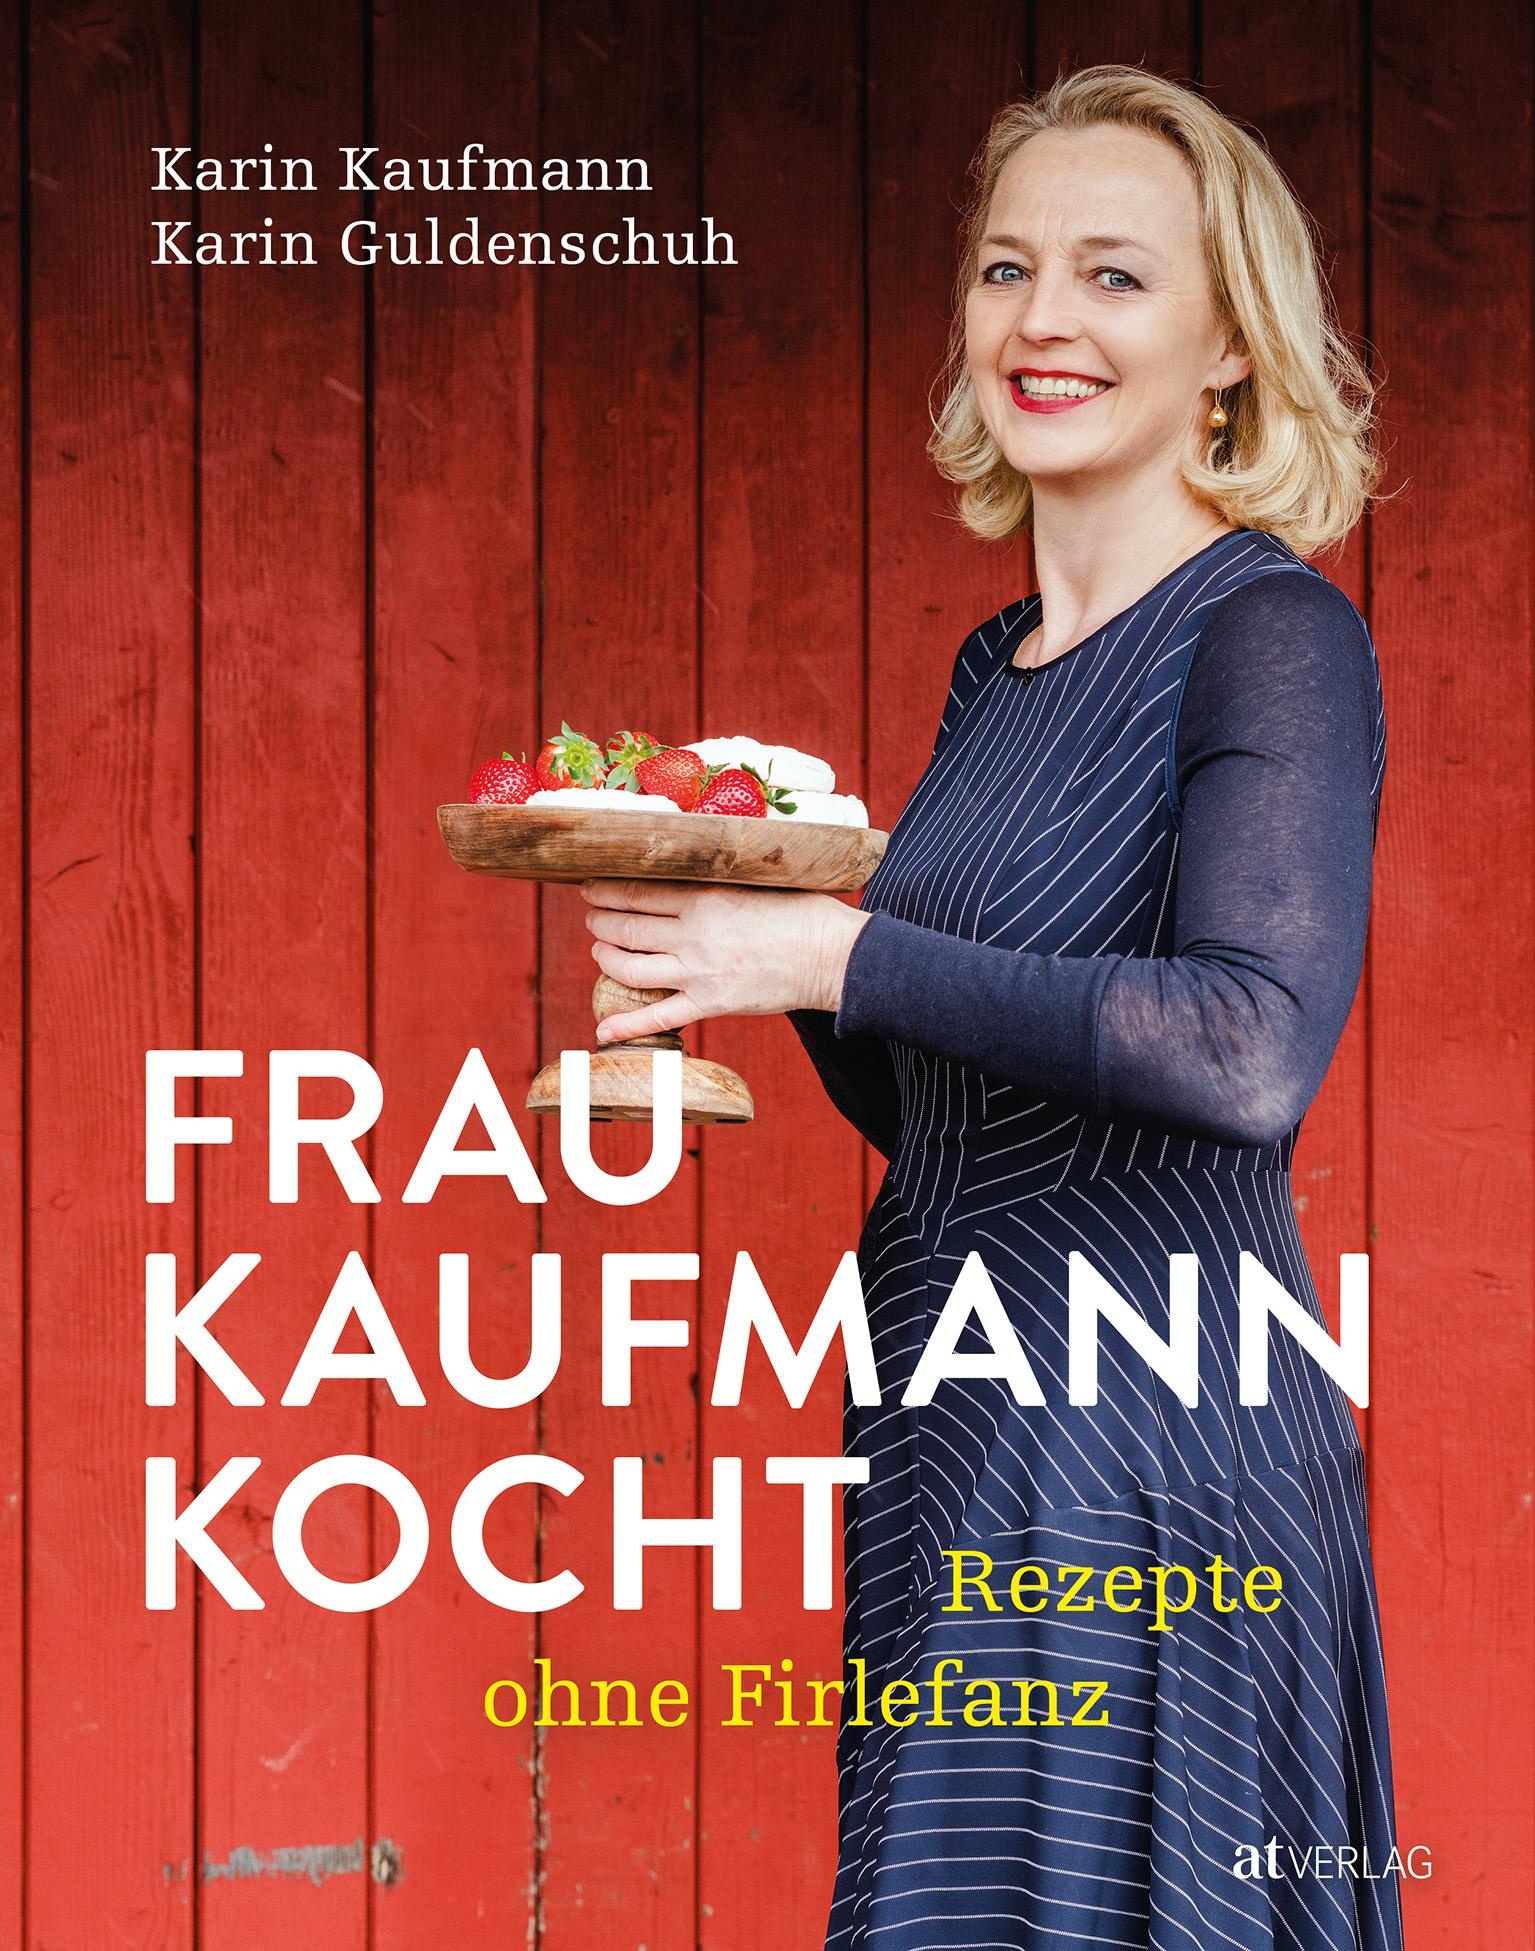 Frau Kaufmann kocht Rezepte ohne Firlefanz, Ratgeber von Karin Guldenschuh, Karin Kaufmann